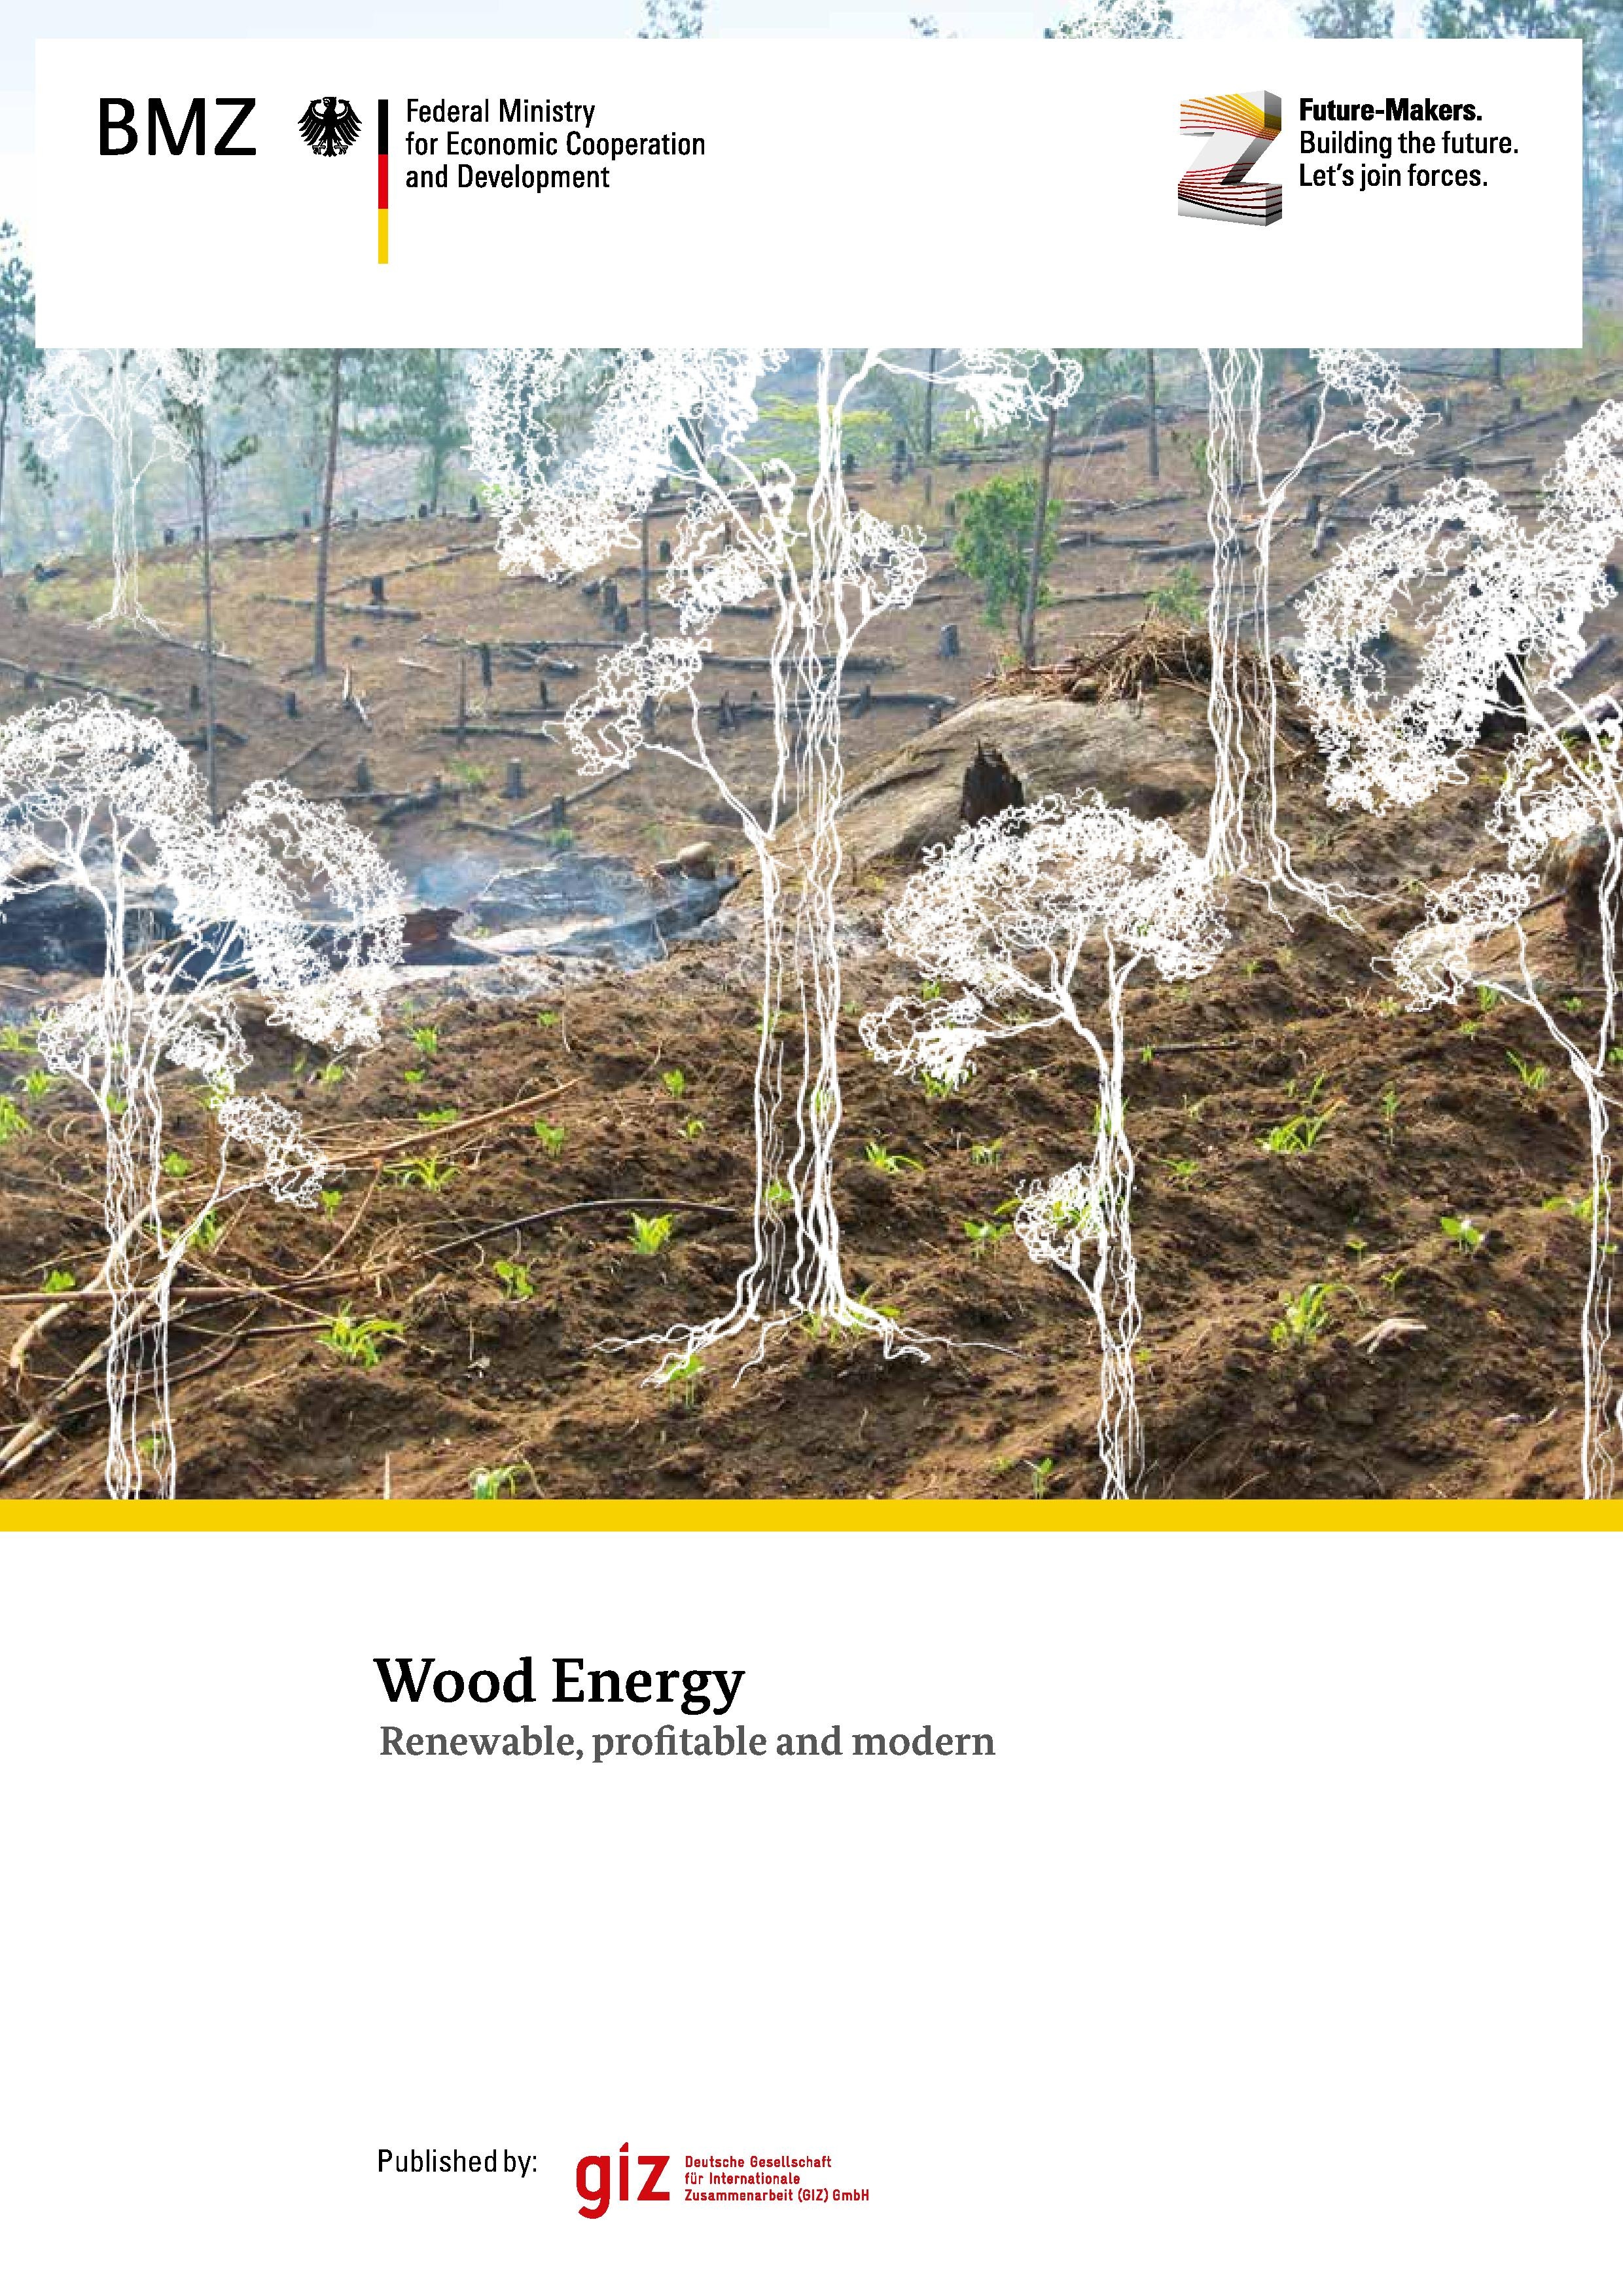 Wood Energy renewable, profitable, and modern